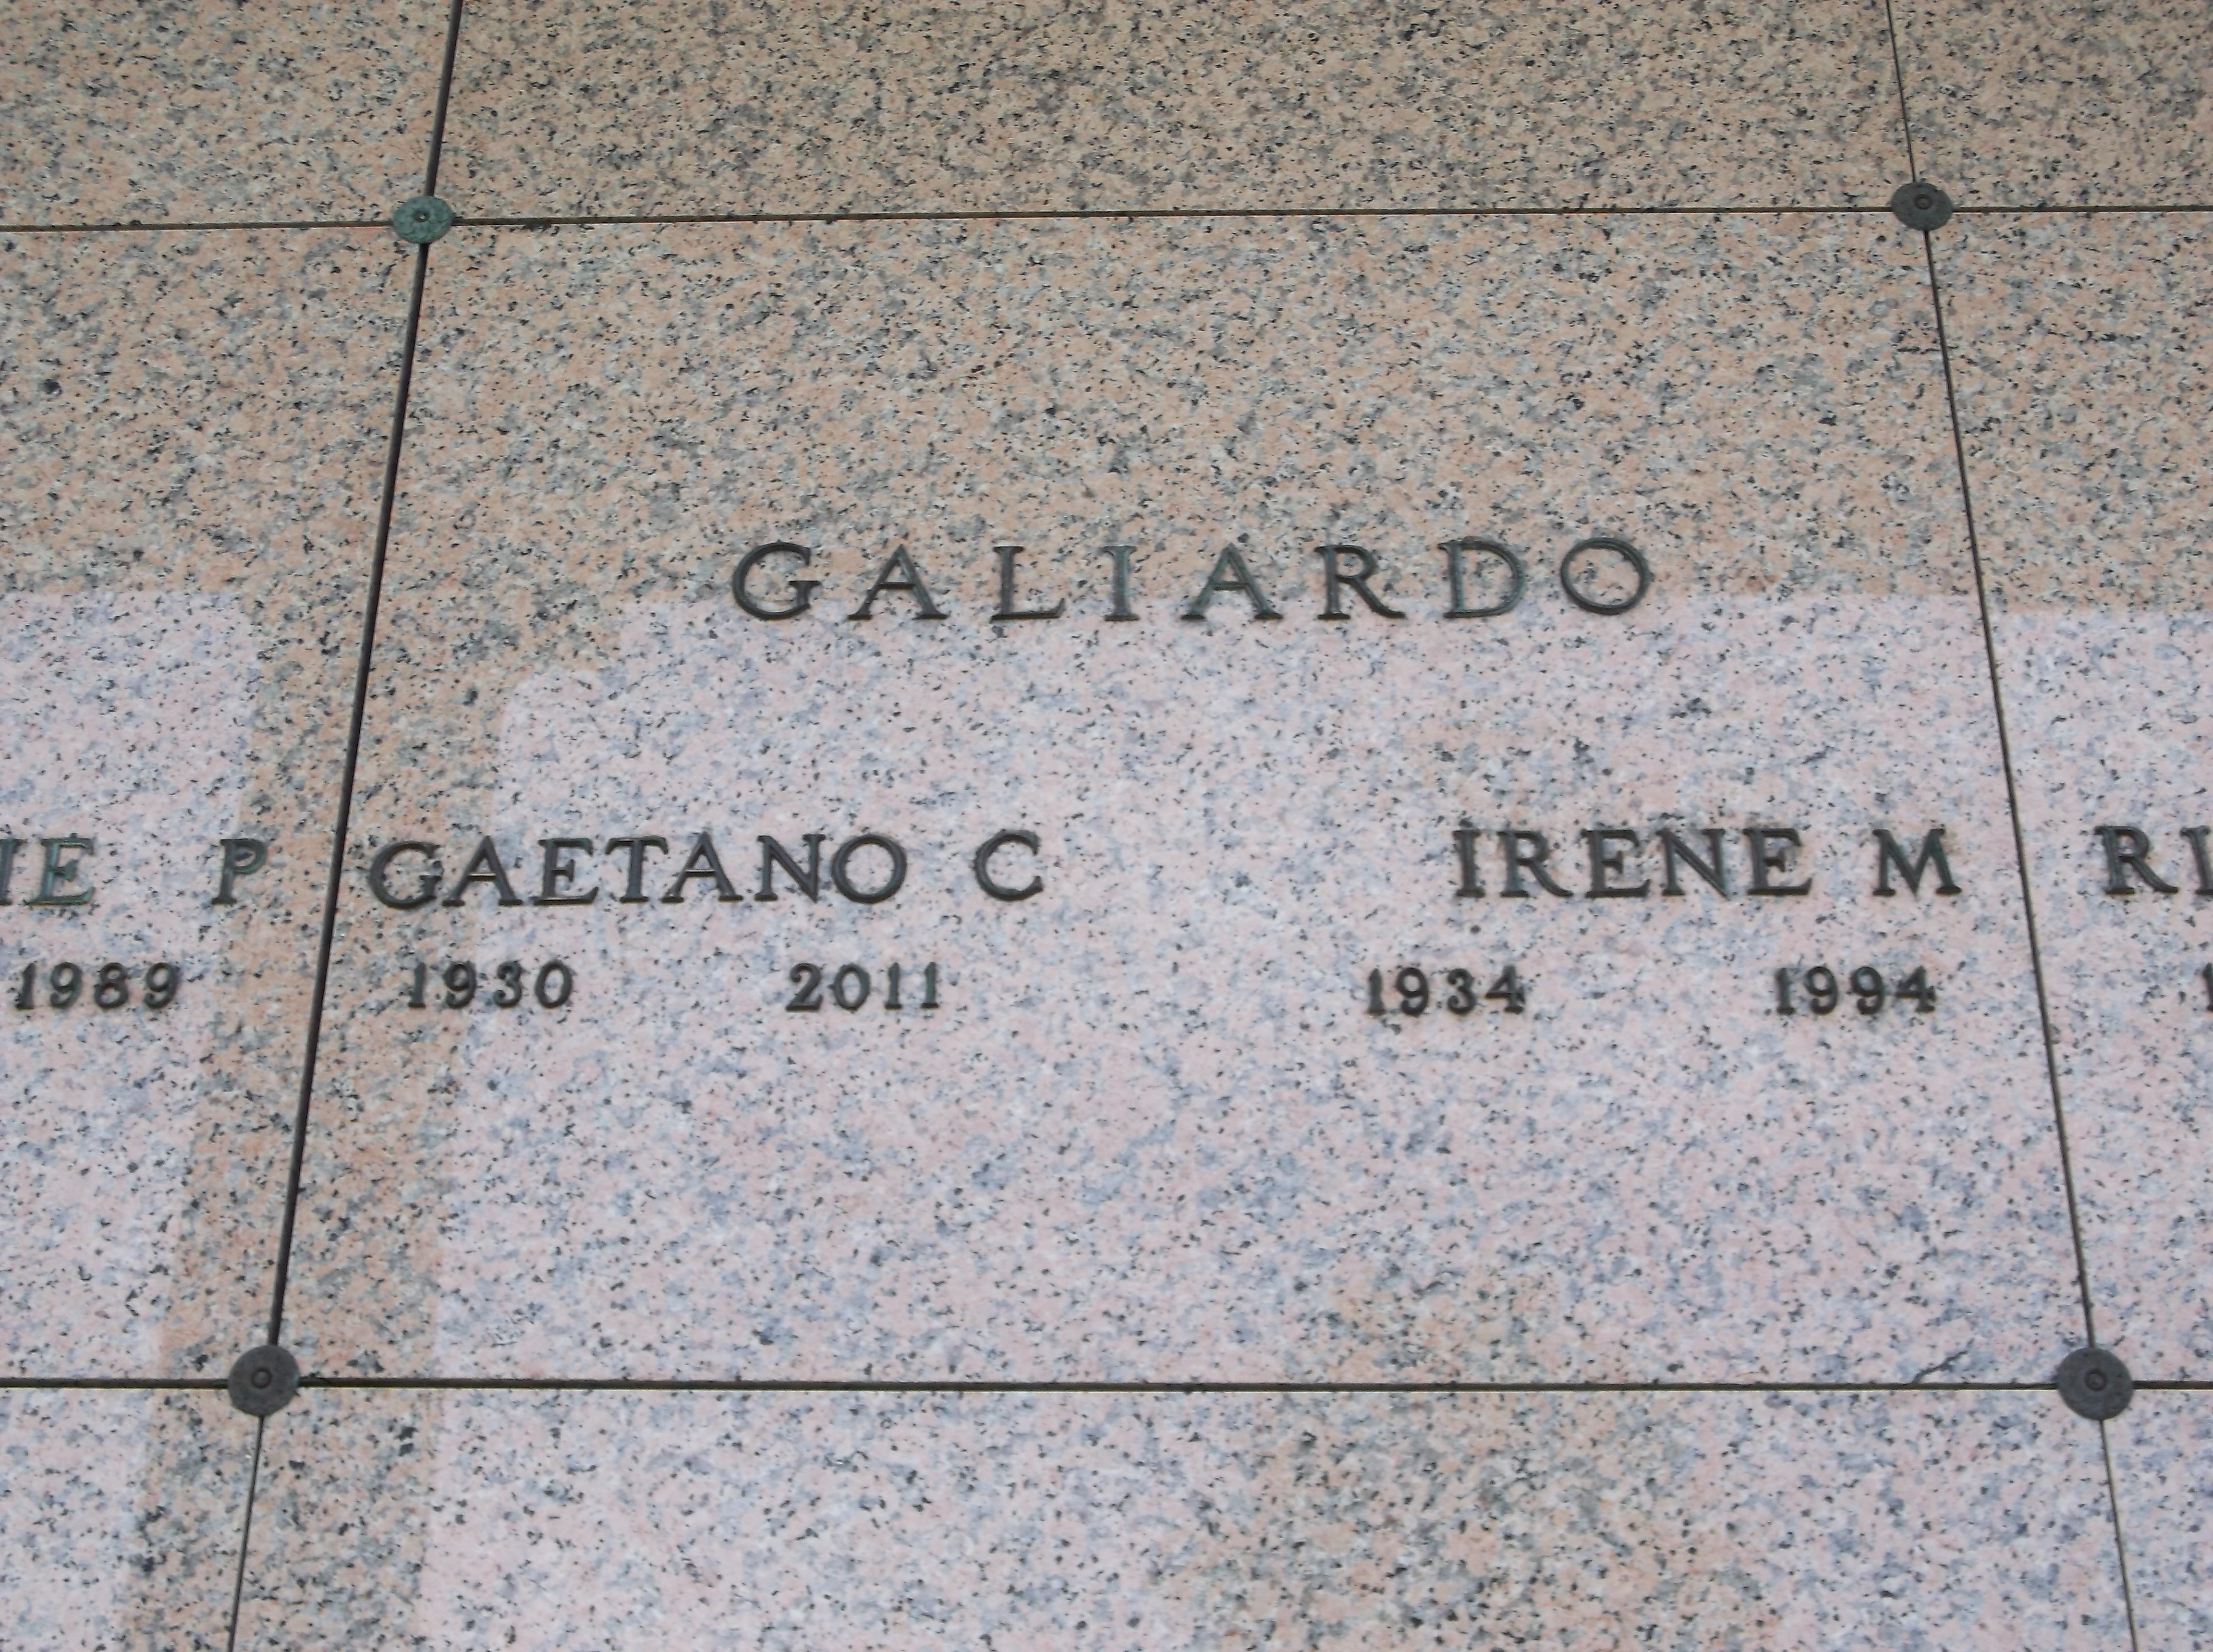 Gaetano C Galiardo